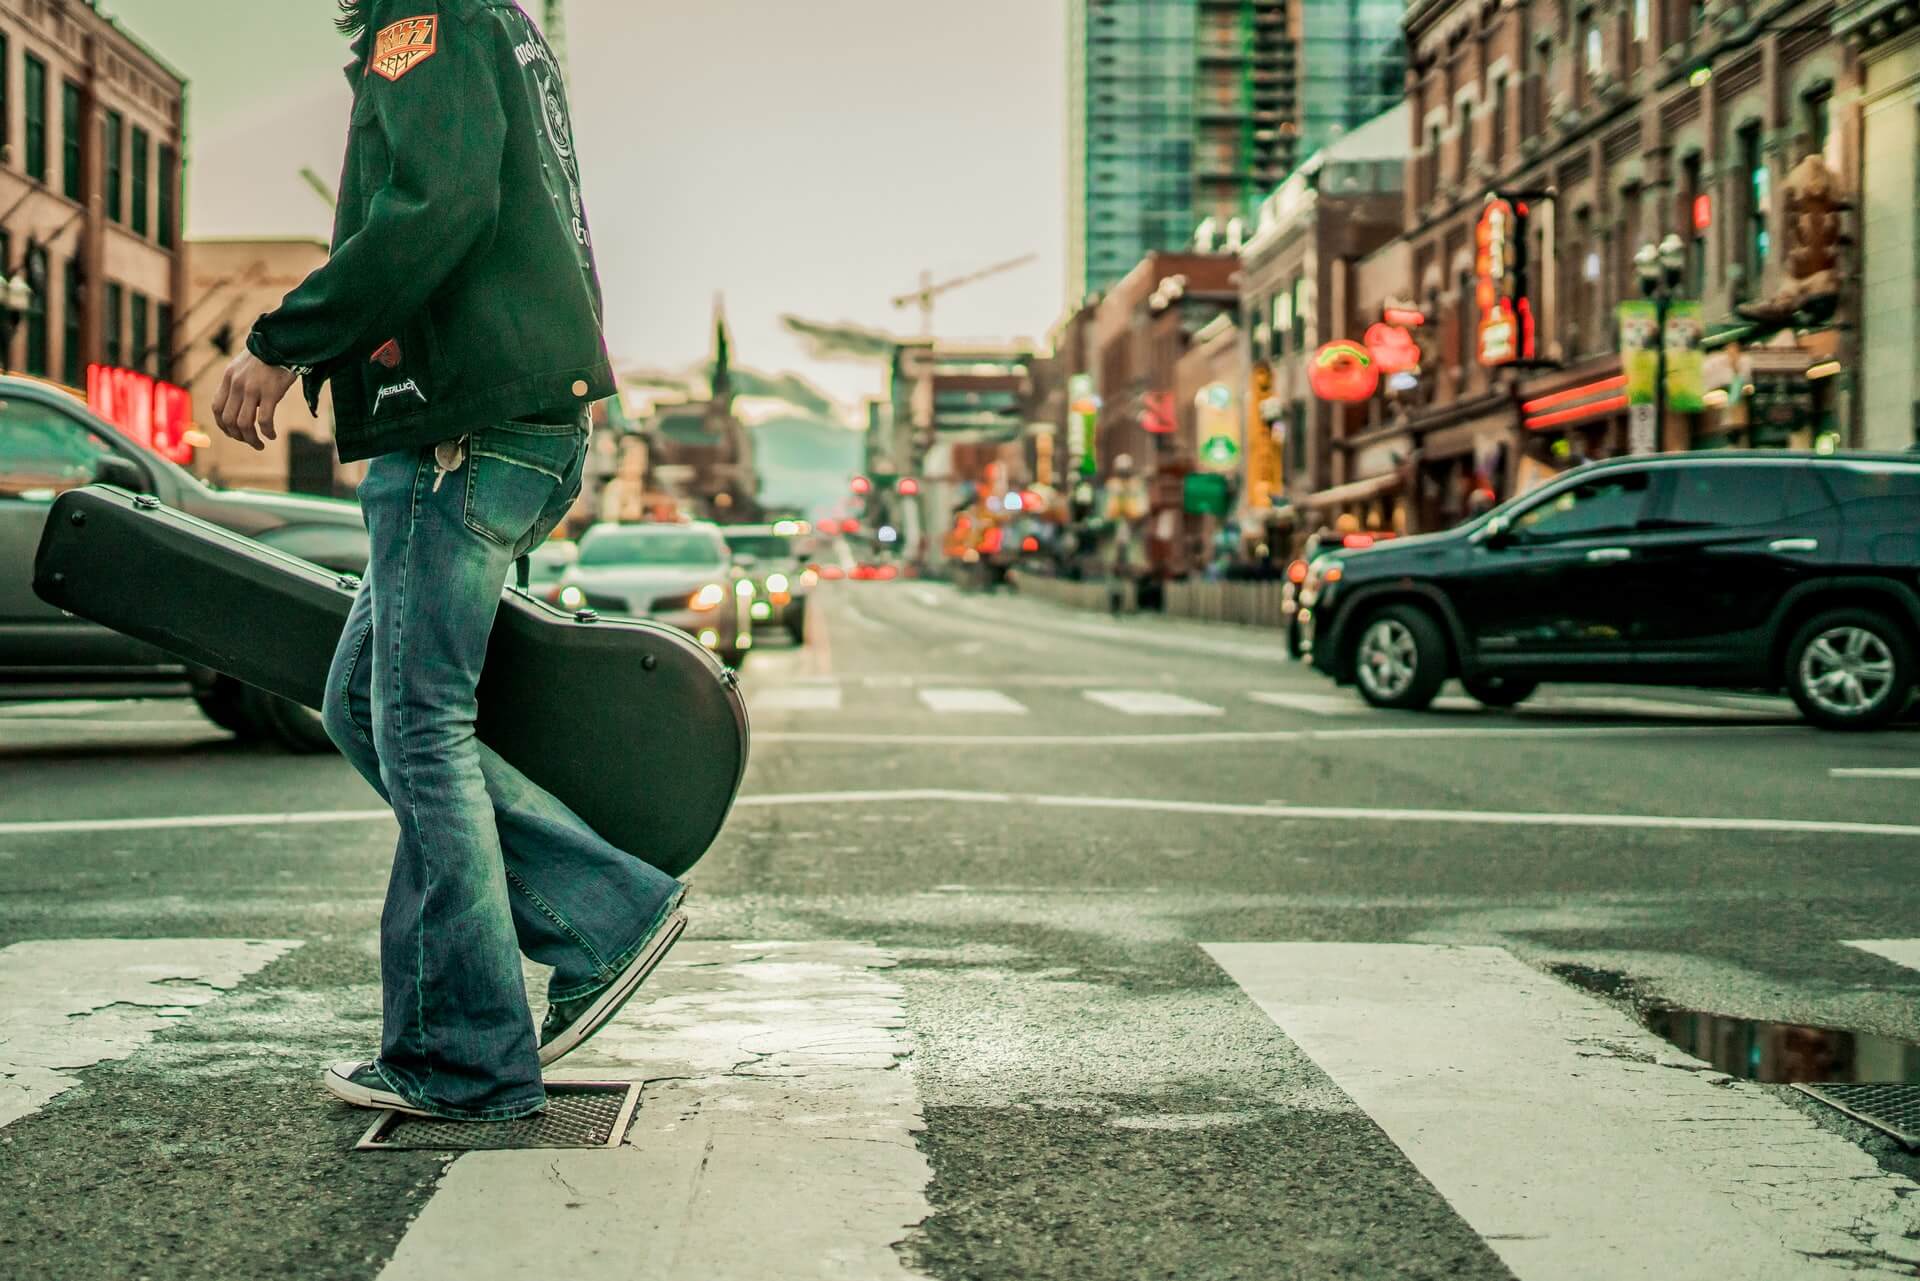 Person carrying guitar case walking across street crosswalk